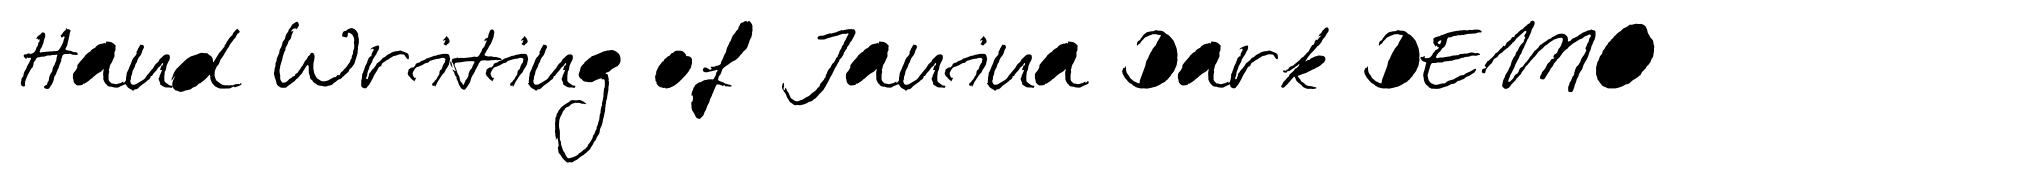 Hand Writing of Janina Dark DEMO image